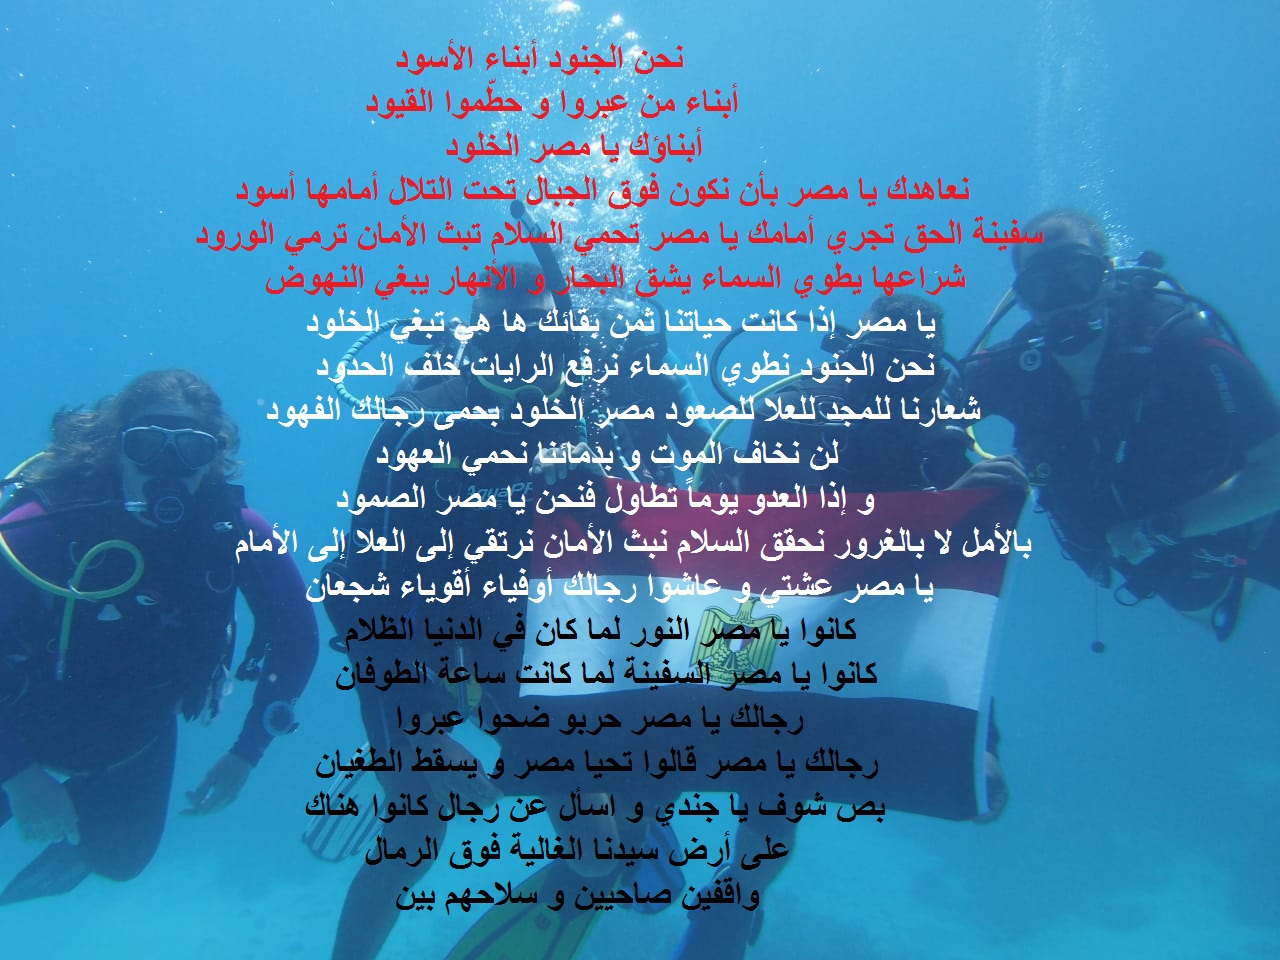 صورة لغواصيين مصريين و علم مصر تحت الماء و مكتوب عليها قصيدة حب الوطن.